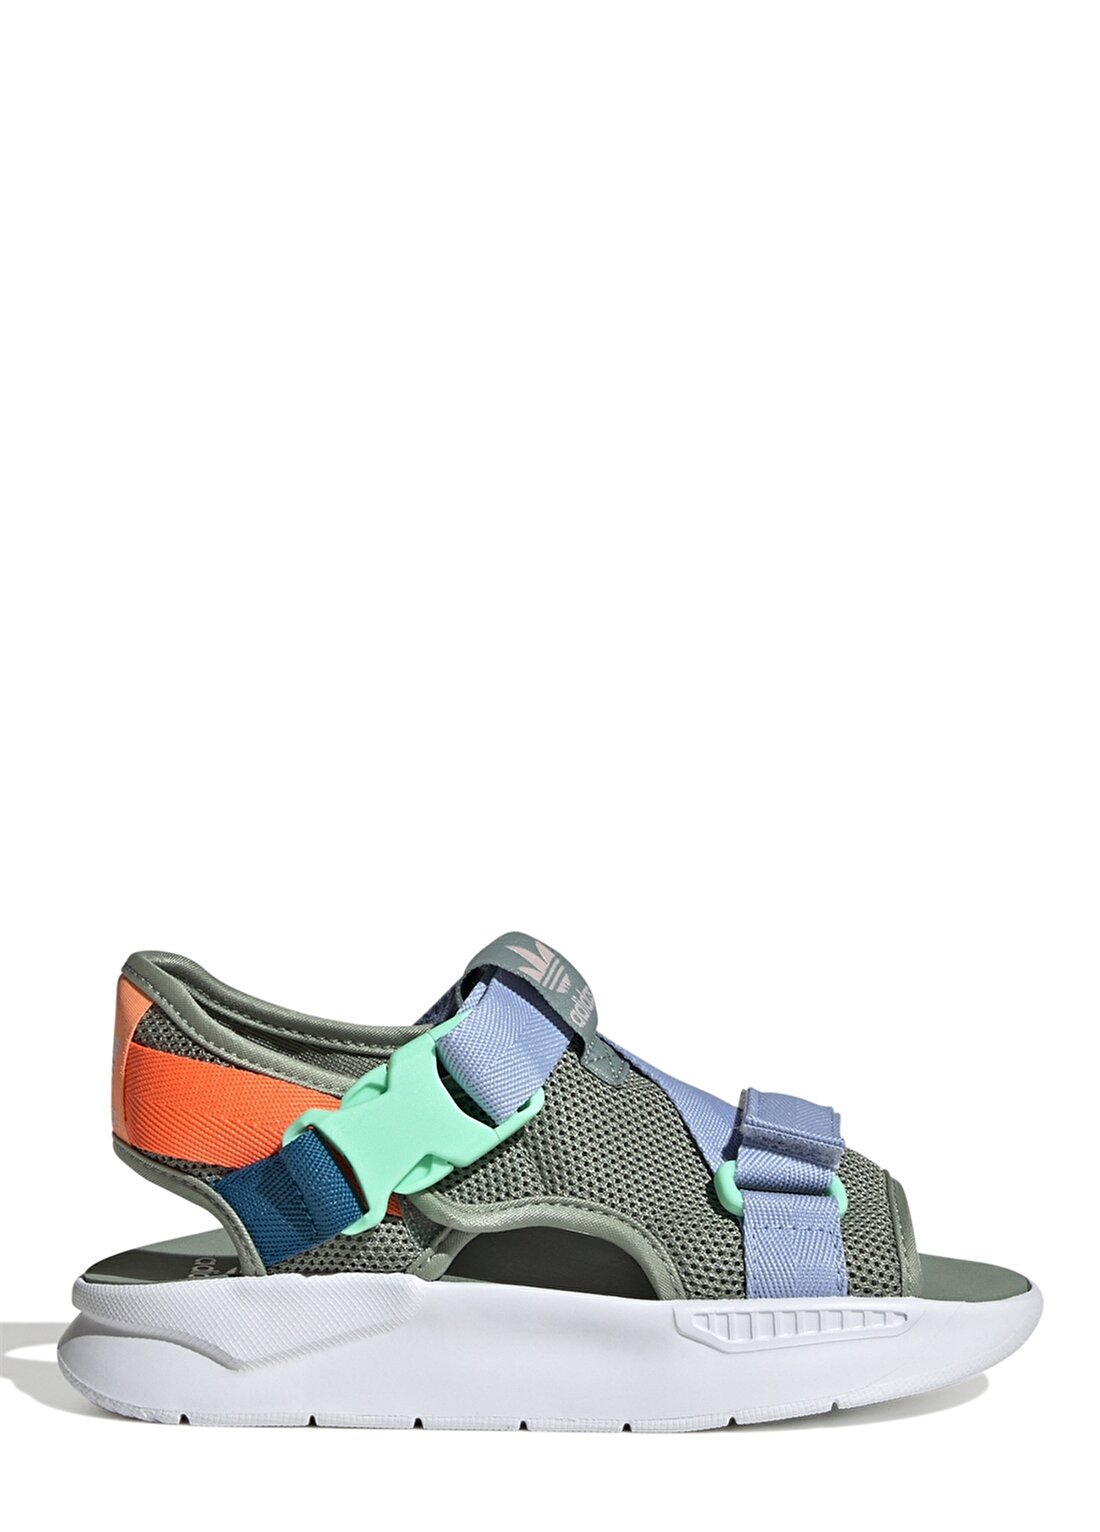 Adidas Mavi - Yeşil Erkek Çocuk Sandalet GW2156 360 SANDAL 3.0 C